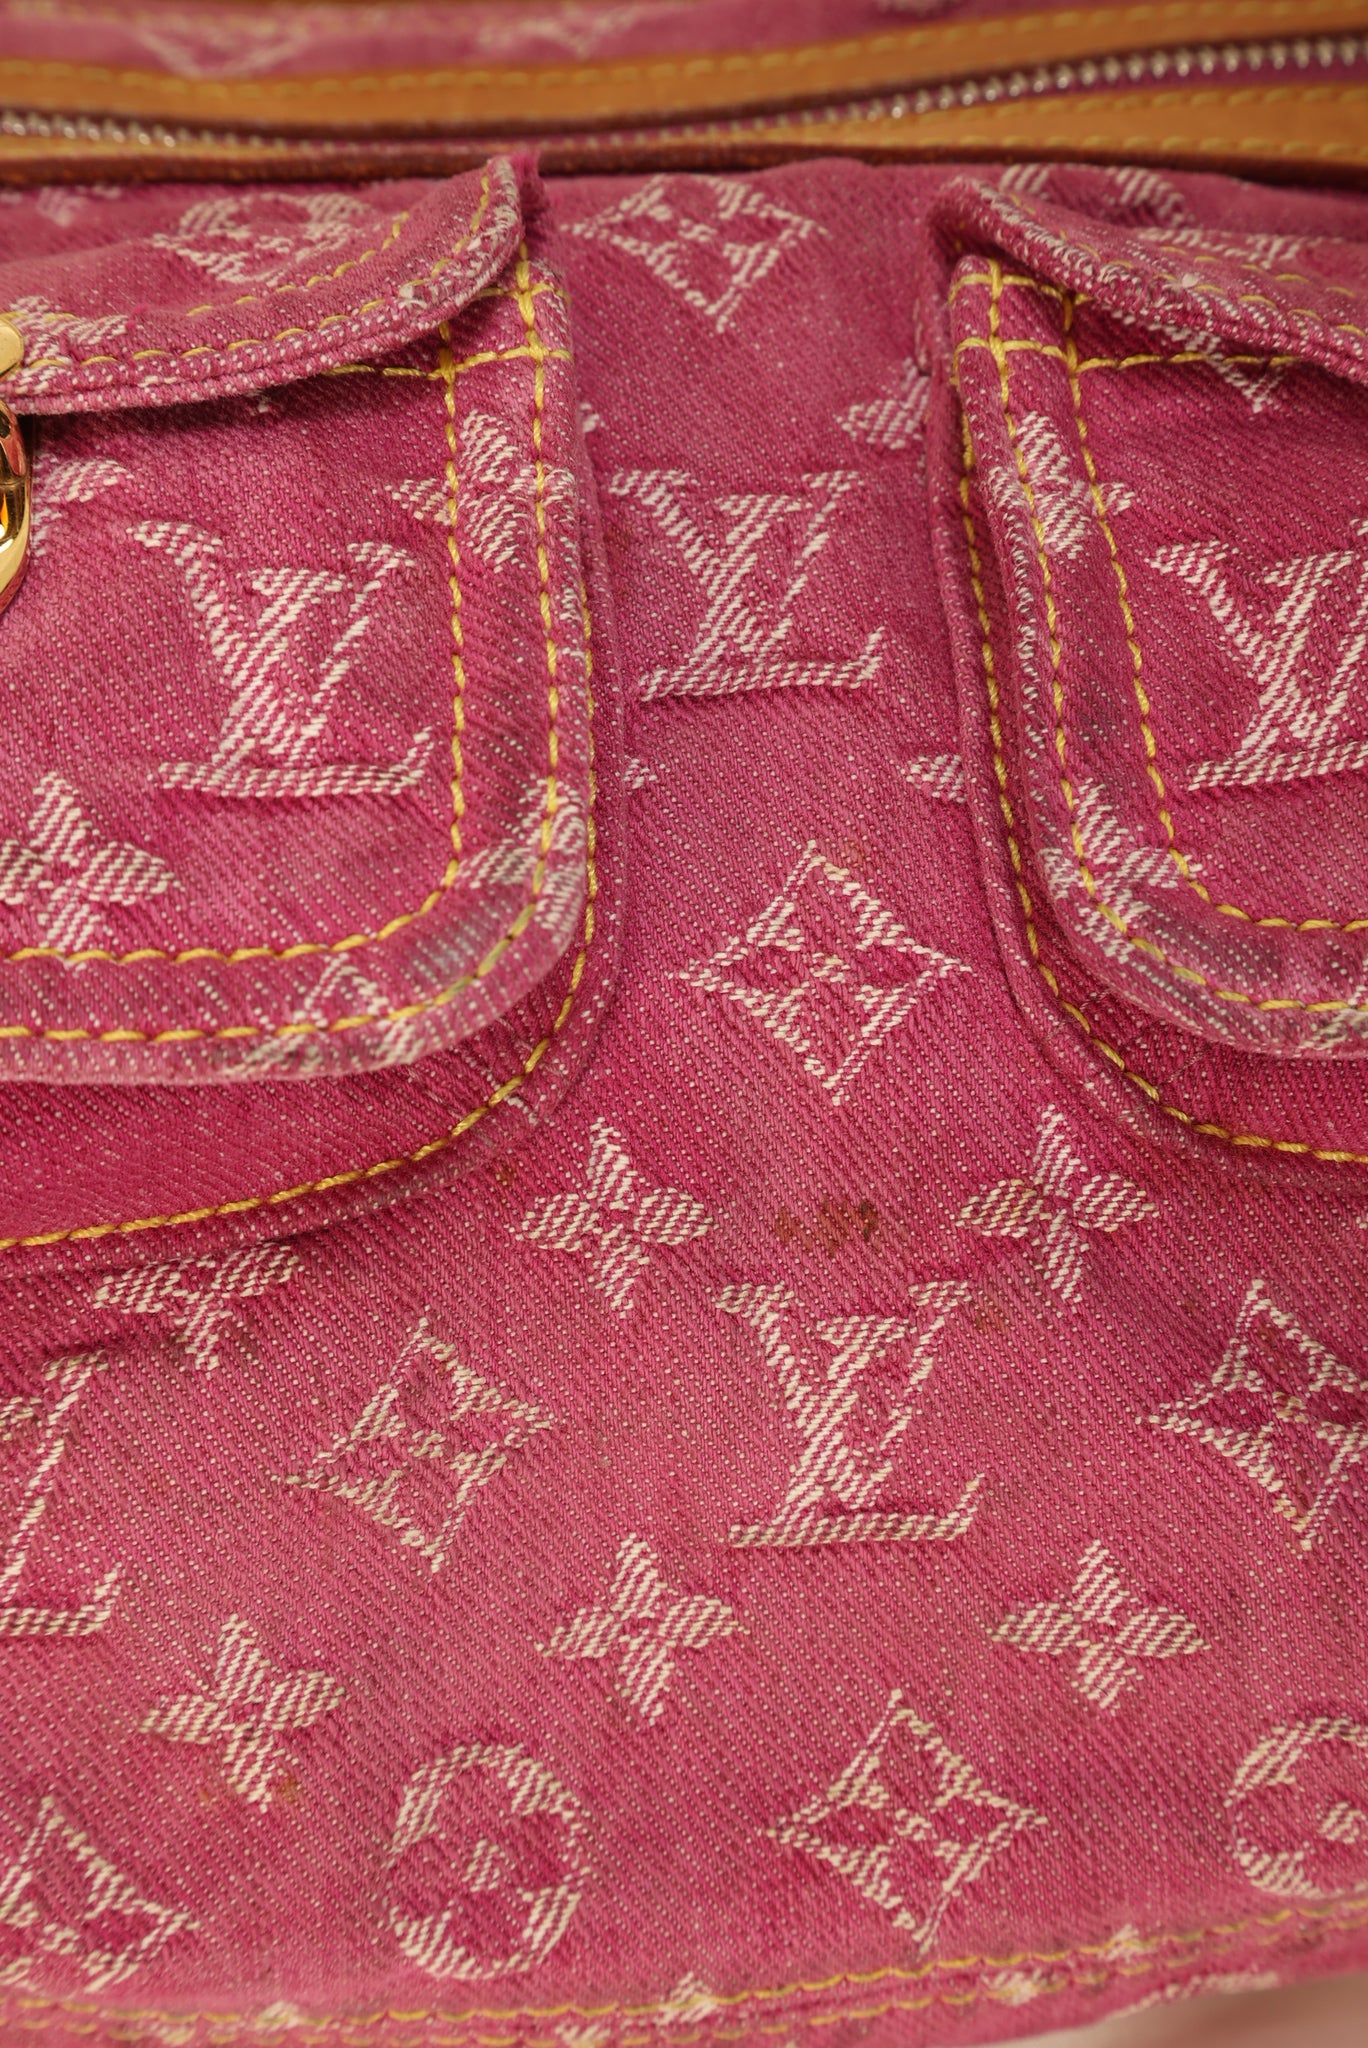 Rare Louis Vuitton Denim Shoulder Bag